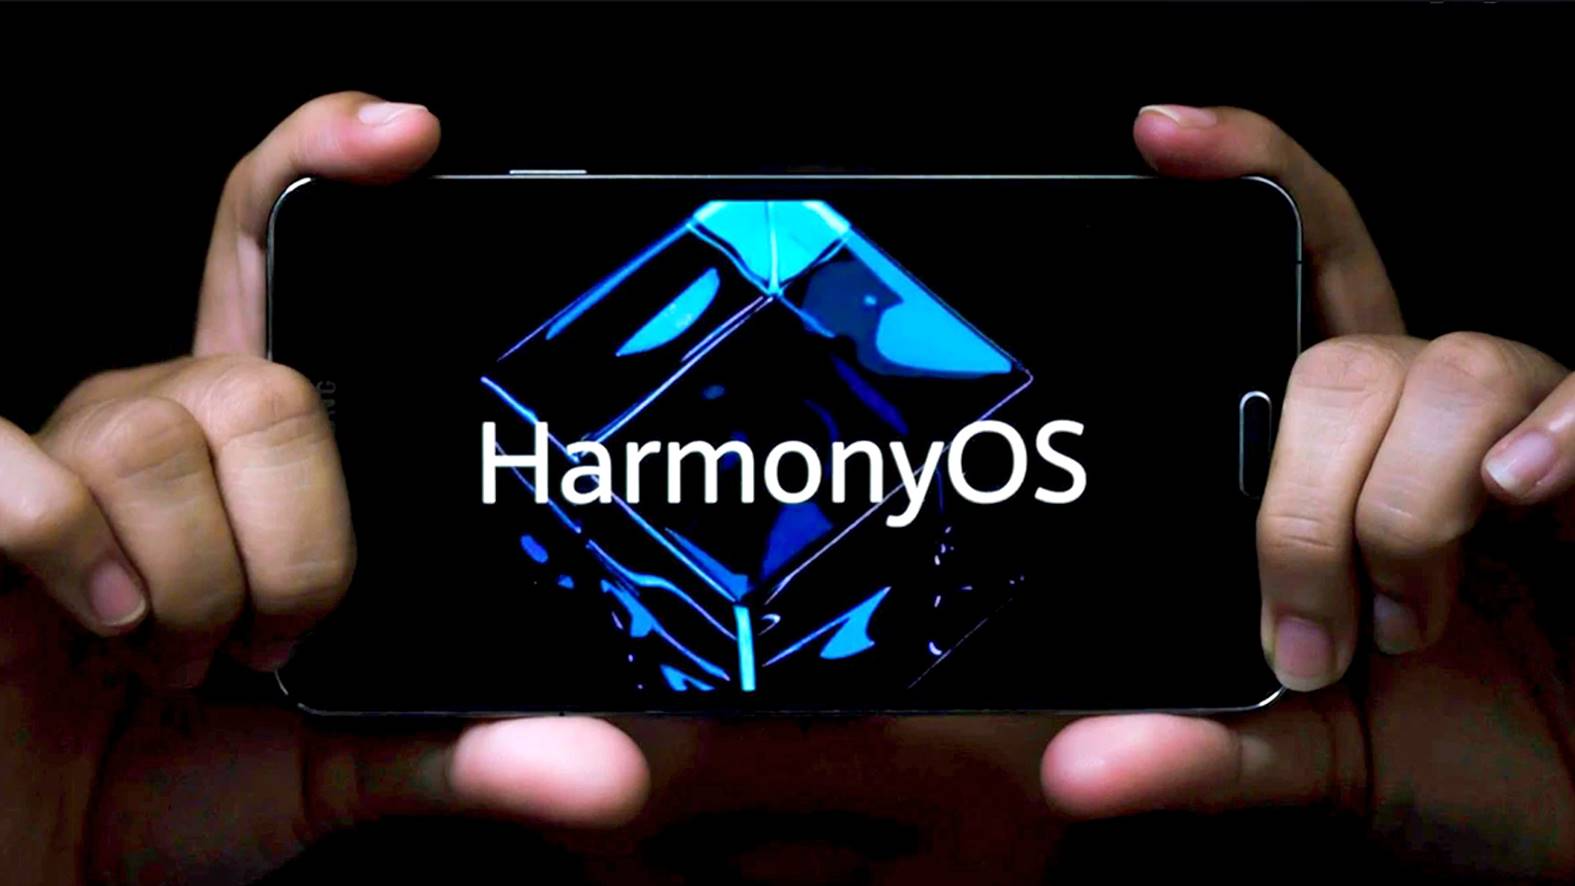 Історичне досягнення - HarmonyOS встановлена на 150 млн пристроїв